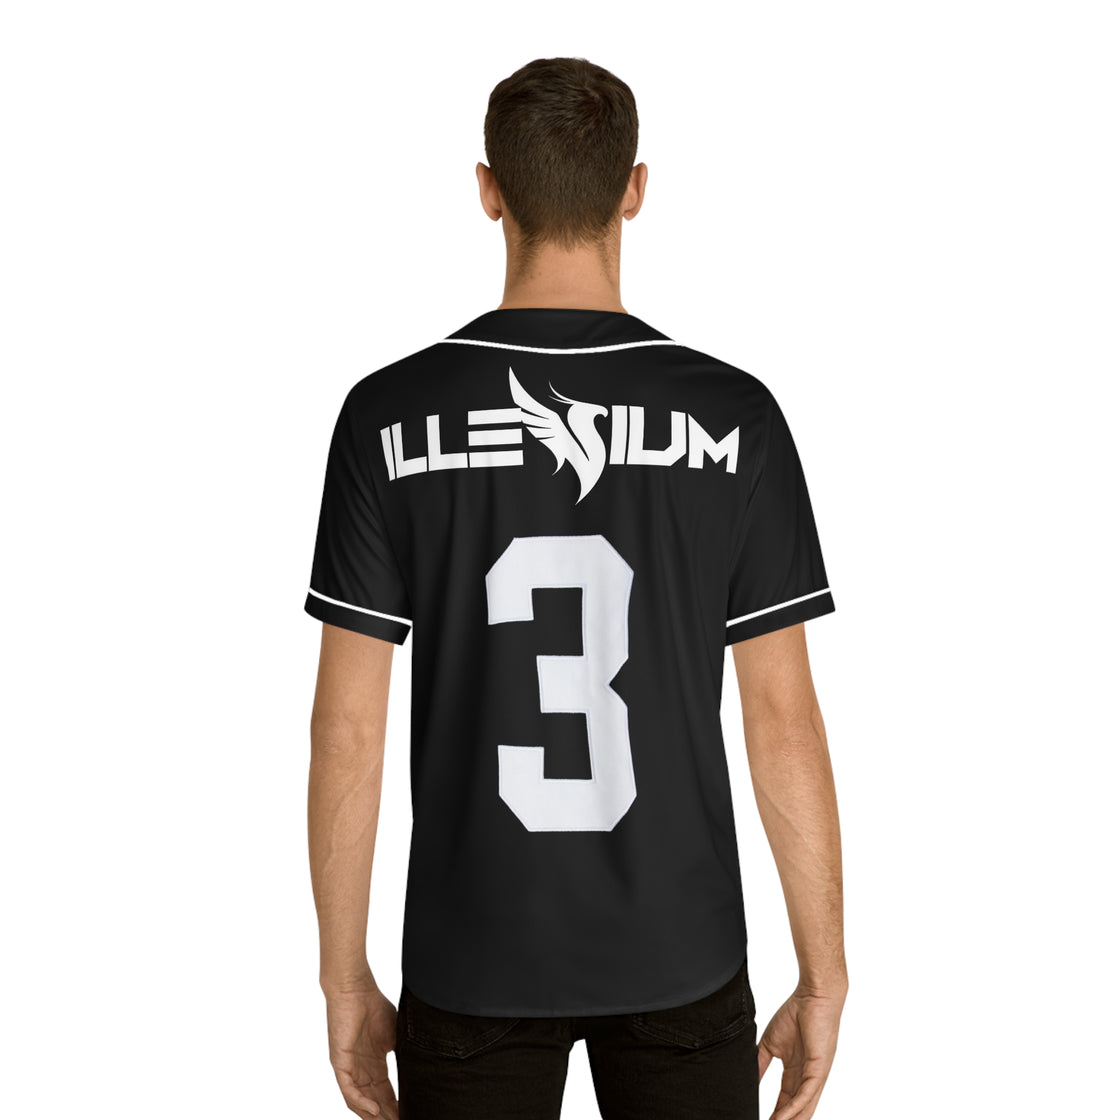 Illenium Jersey (Black)